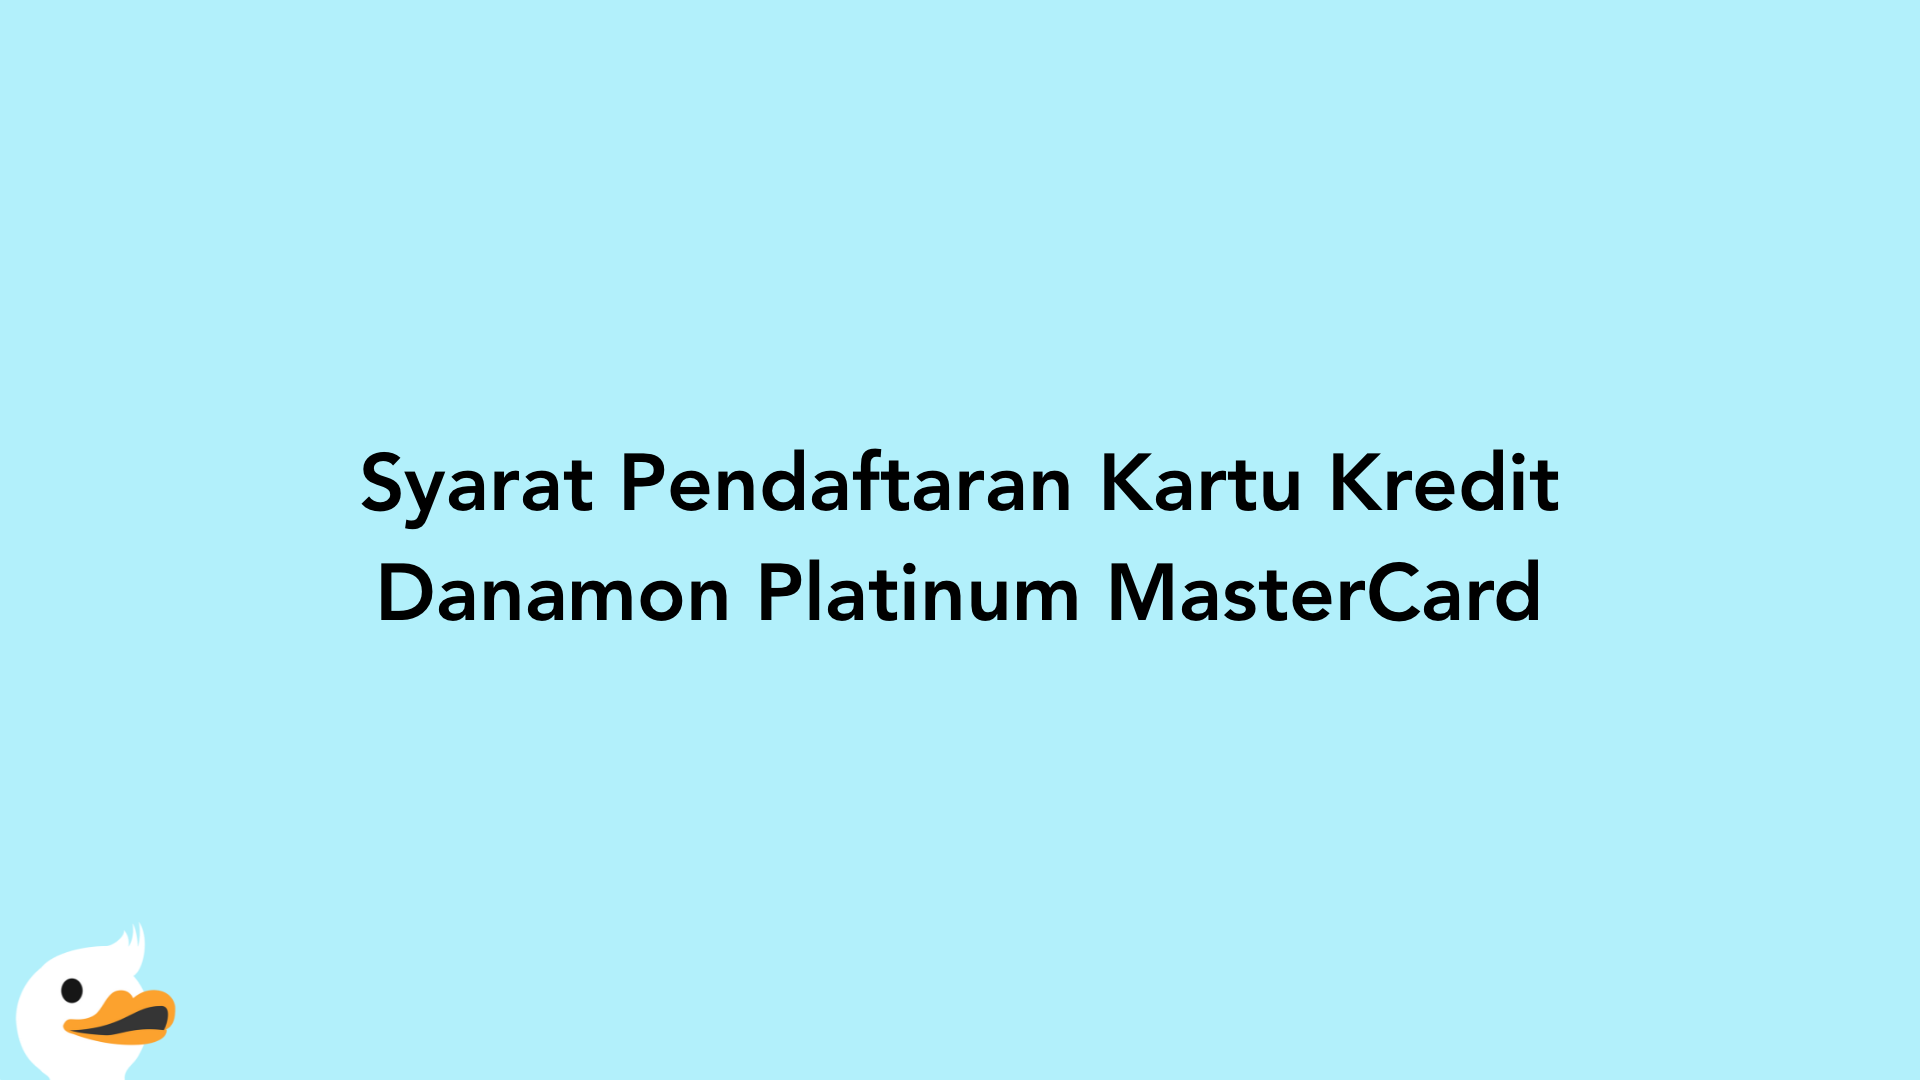 Syarat Pendaftaran Kartu Kredit Danamon Platinum MasterCard